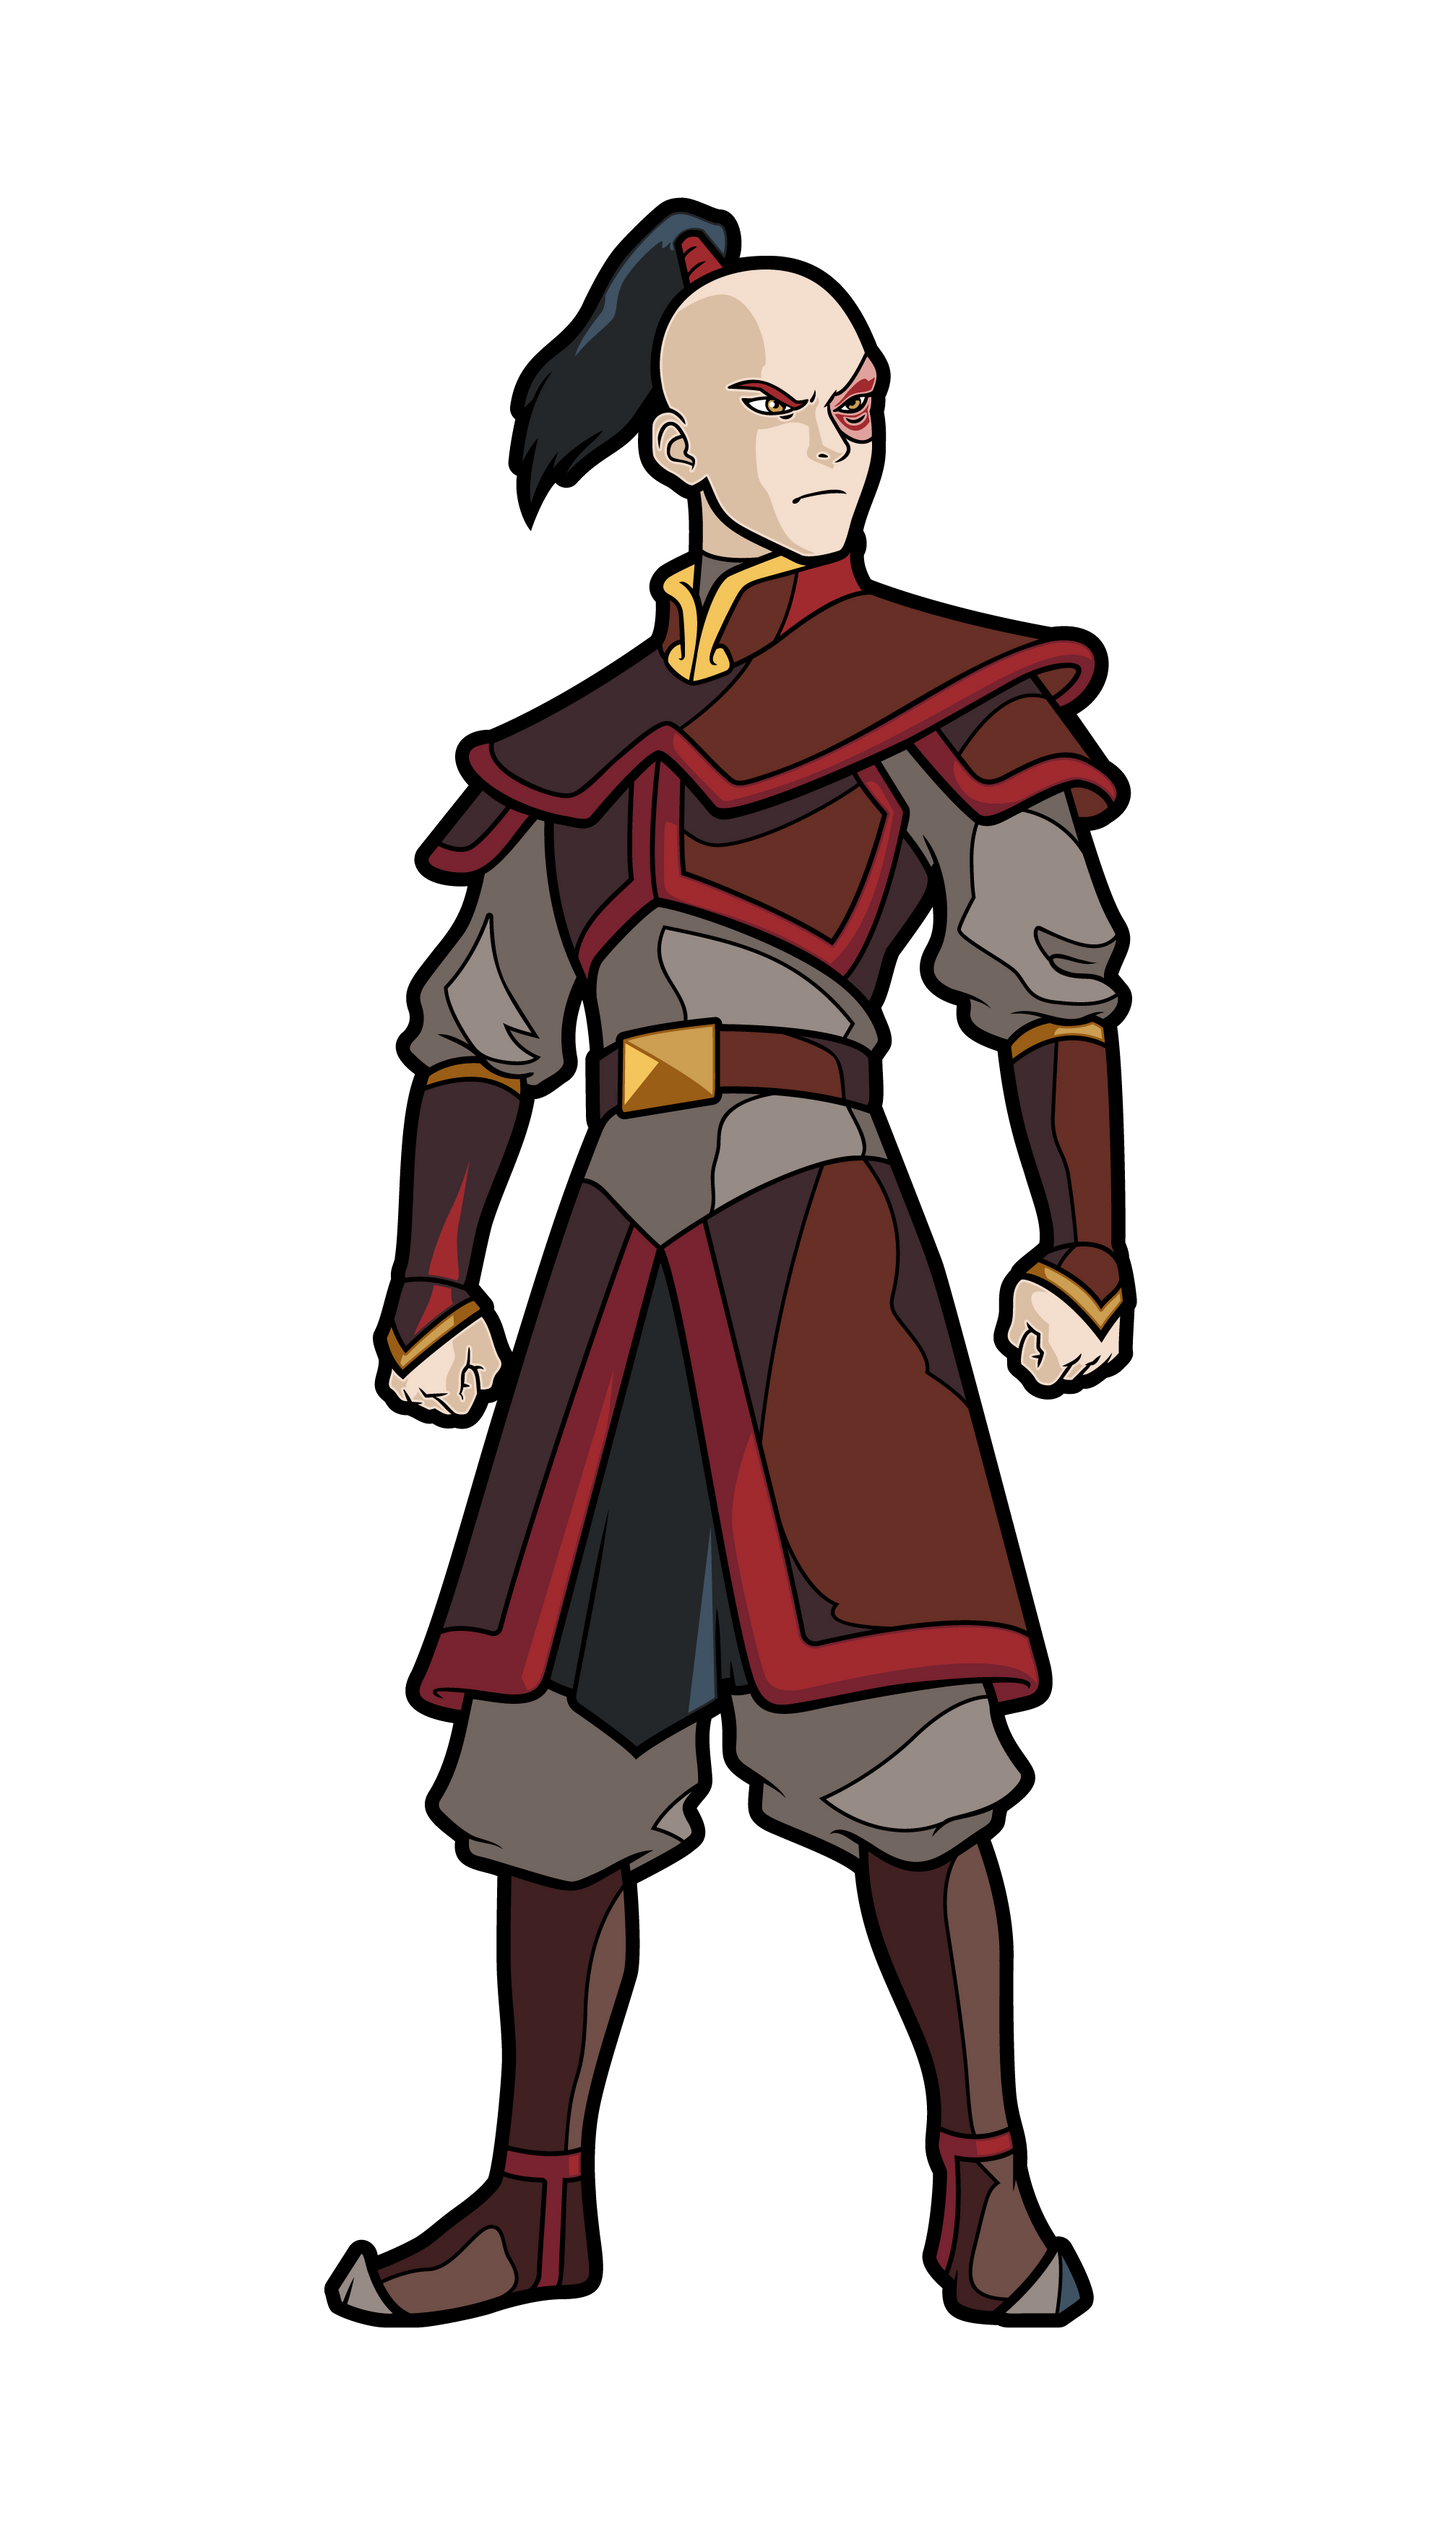 Prince Zuko (#618) Avatar The Last Airbender FiGPiN